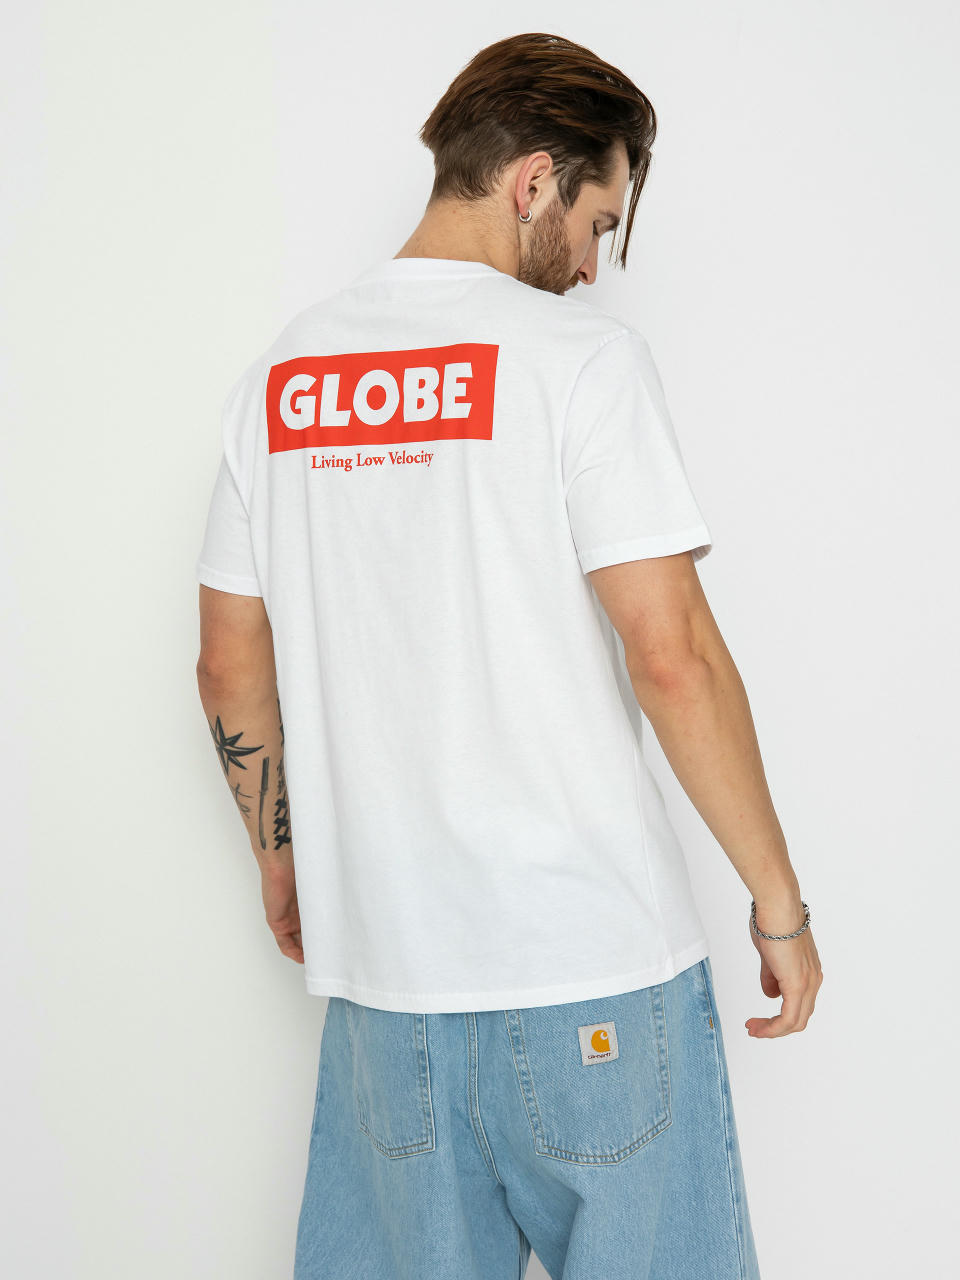 Тениска Globe Living Low Velocity (white/red)